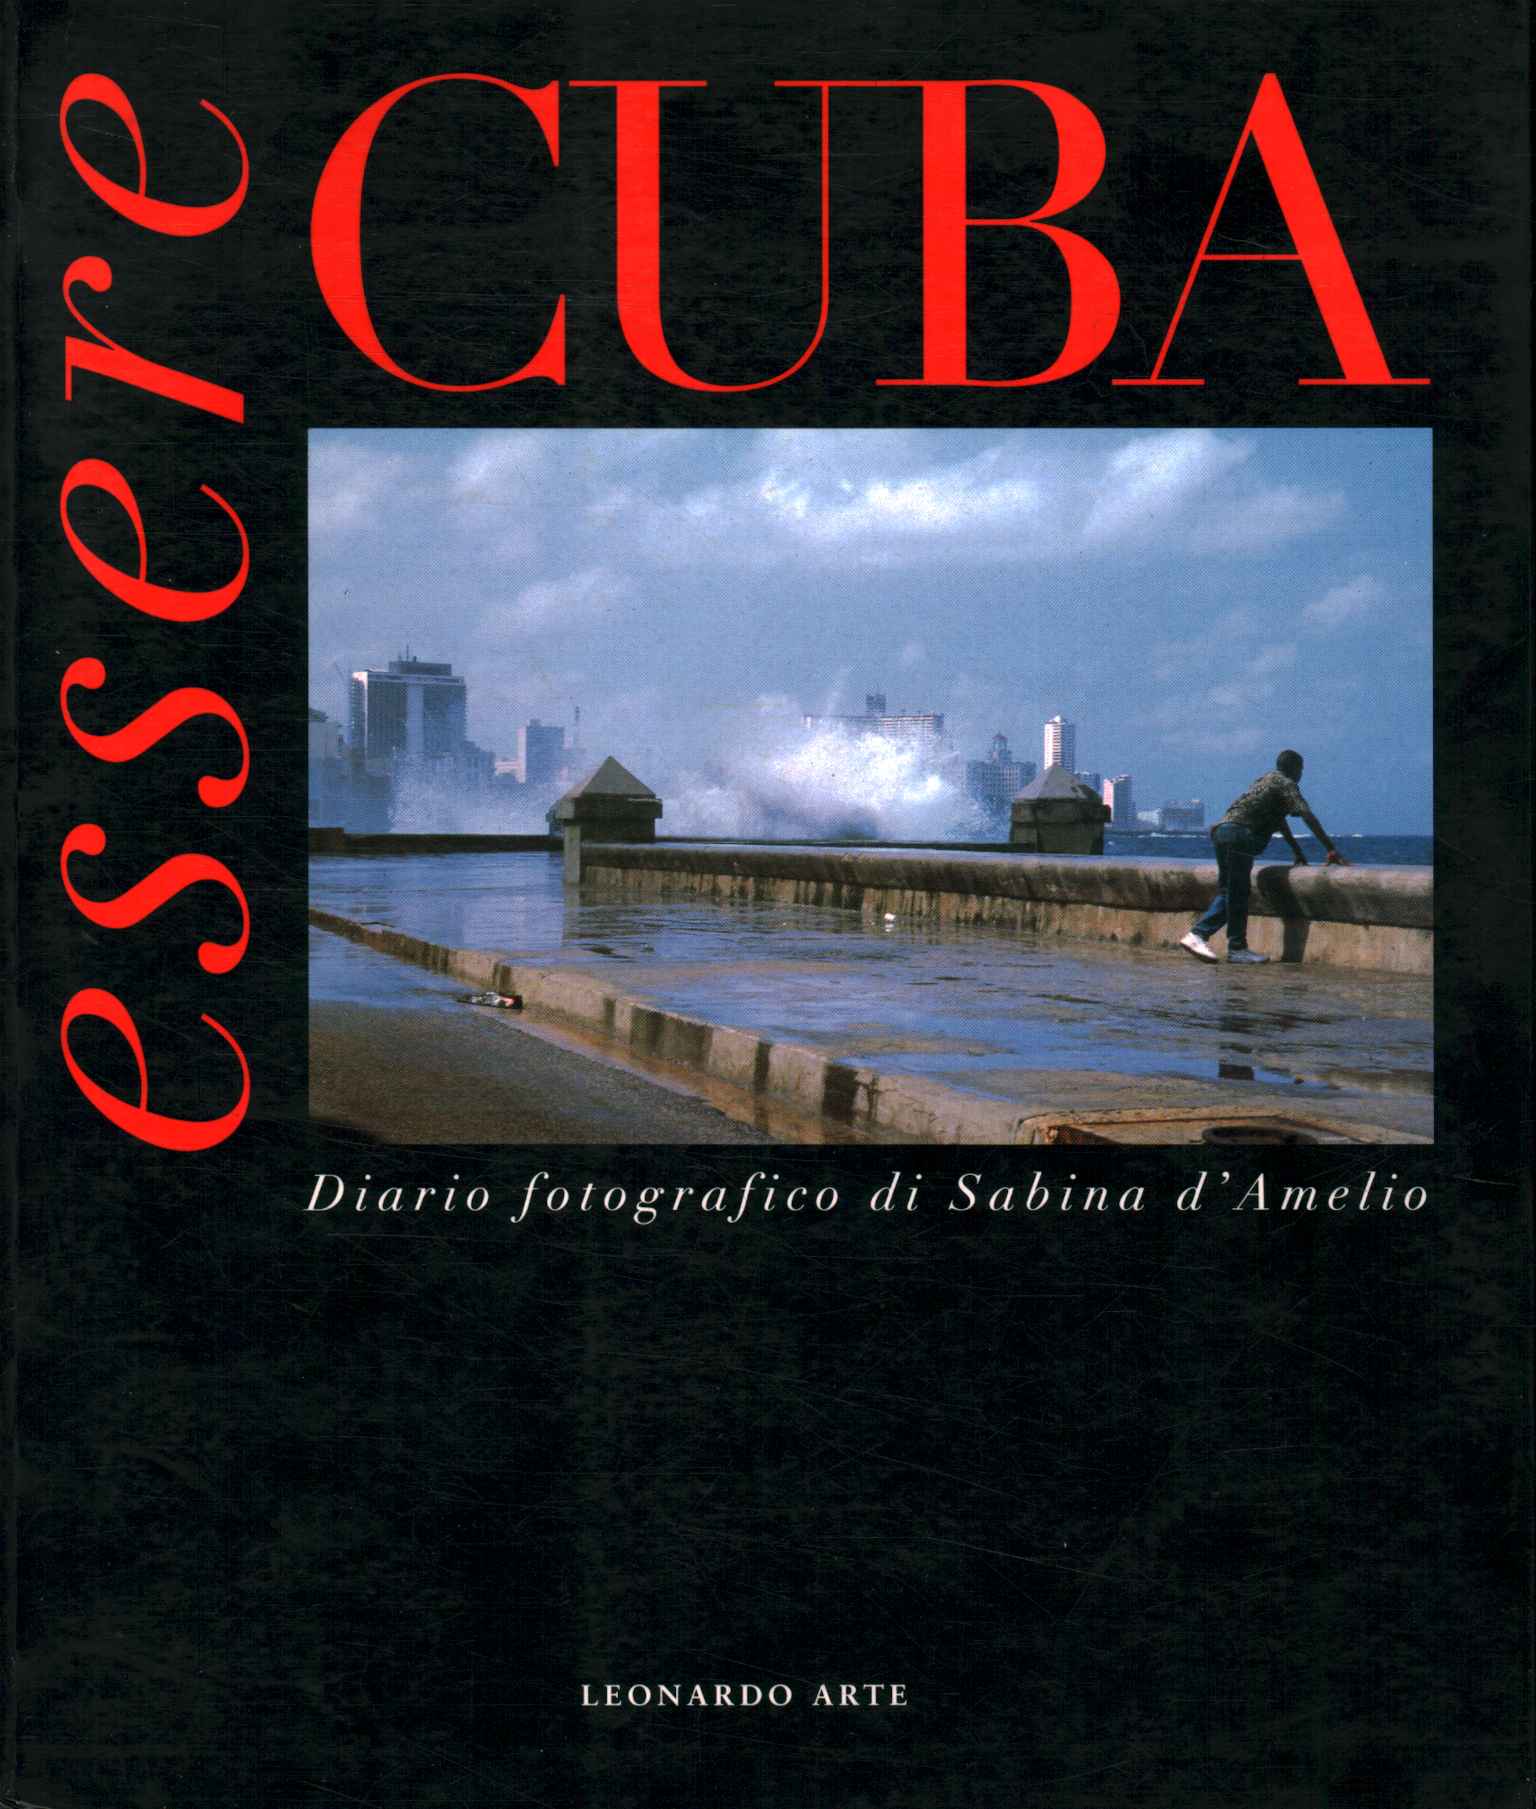 Being Cuba